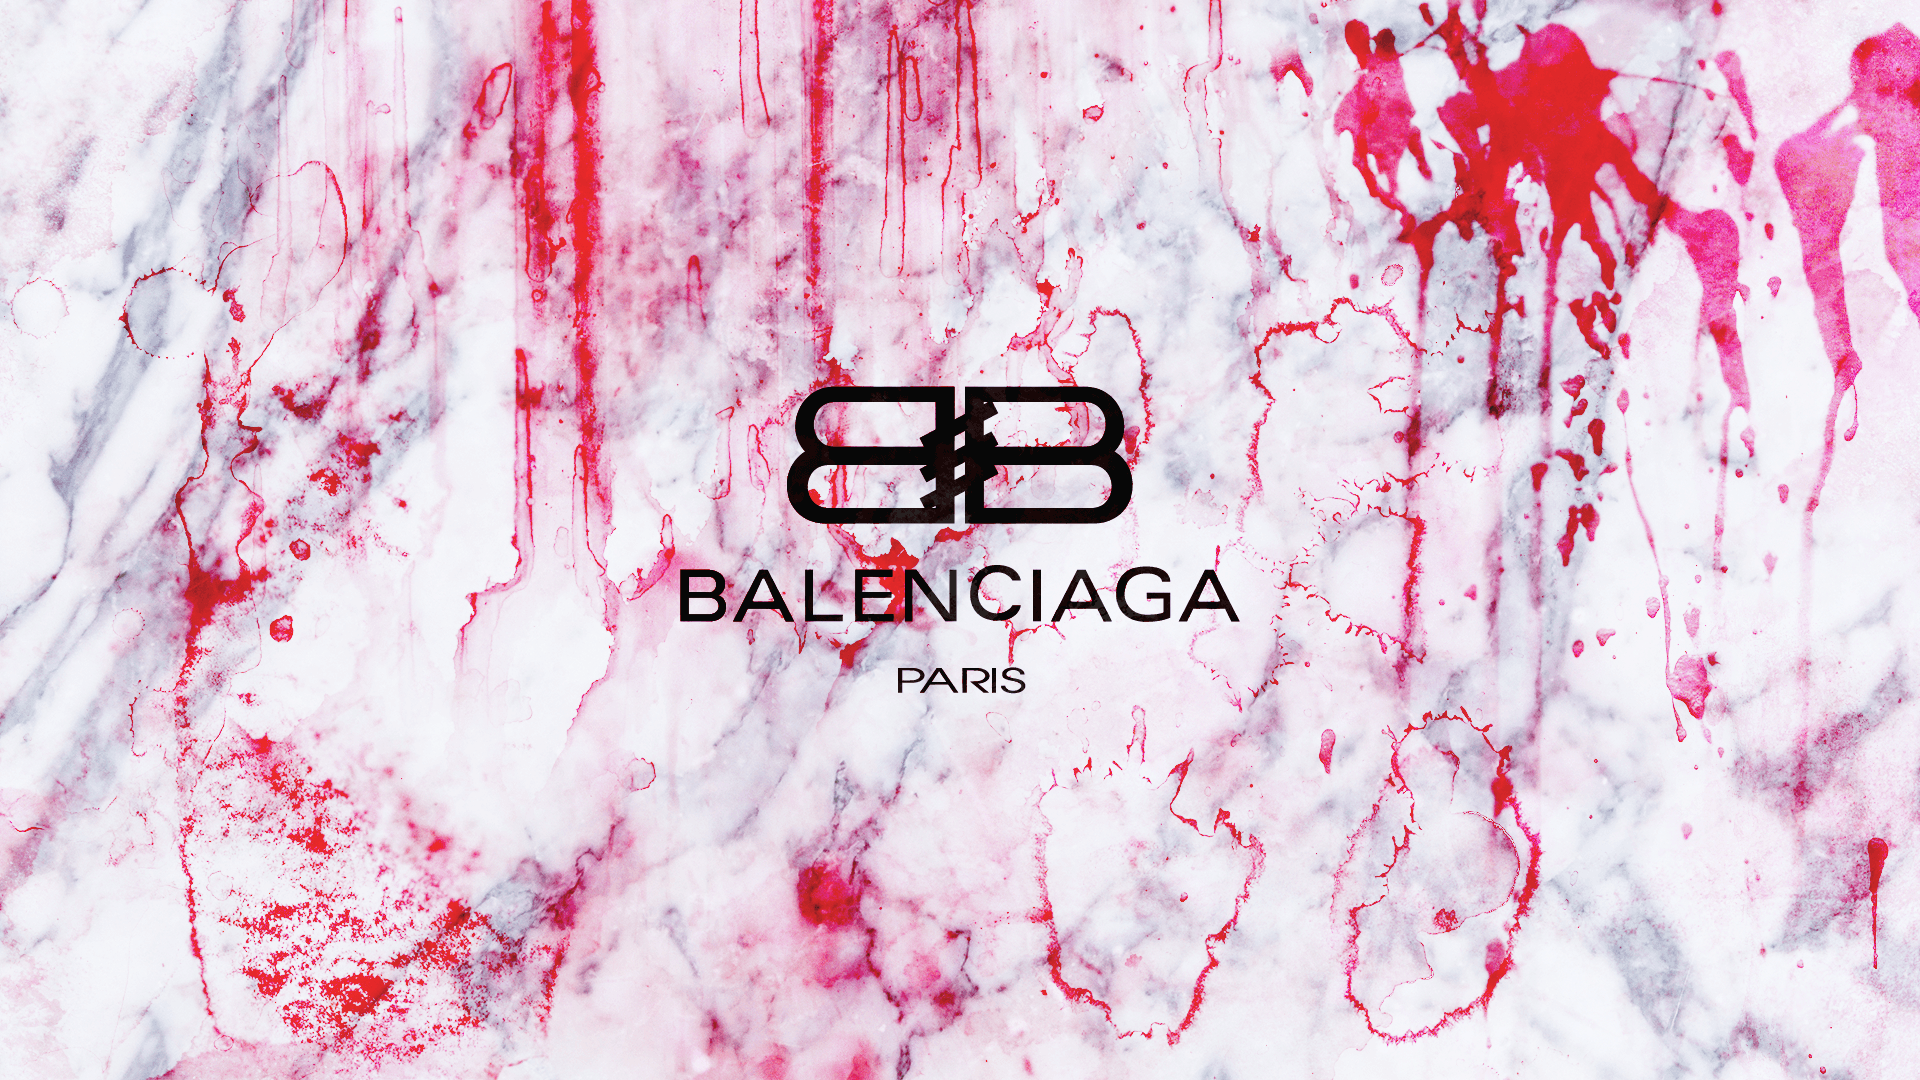 Balenciaga Wallpapers Top Free Balenciaga Backgrounds Wallpaperaccess